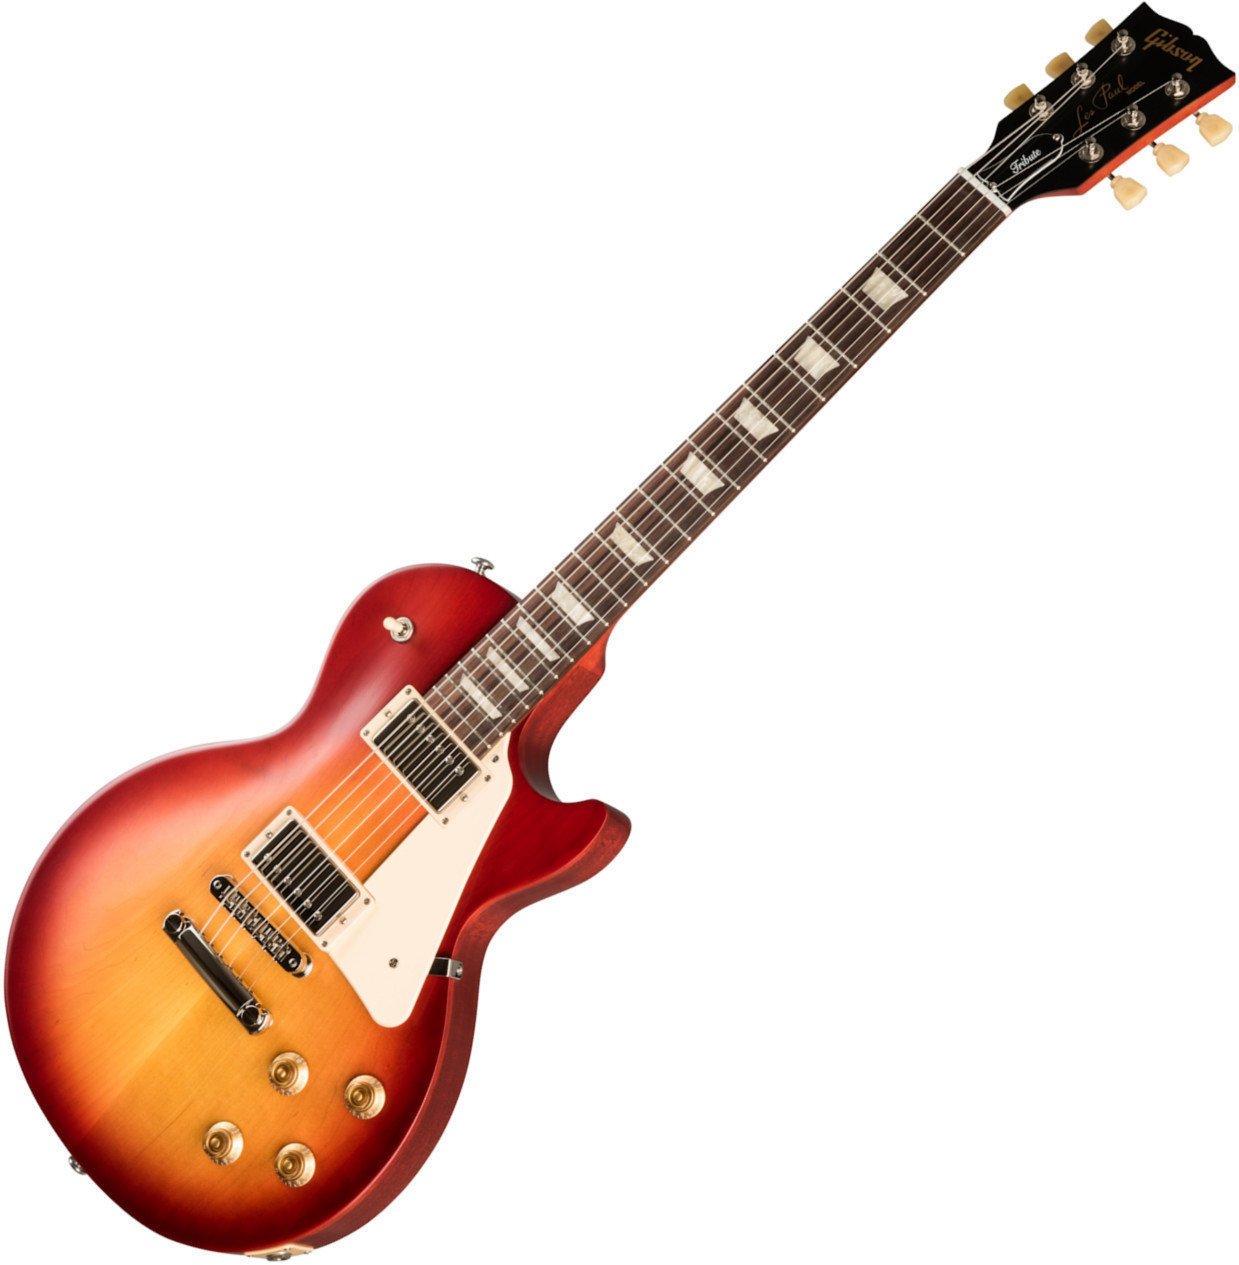 Gibson Les Paul Tribute Cherry Sunburst Gibson